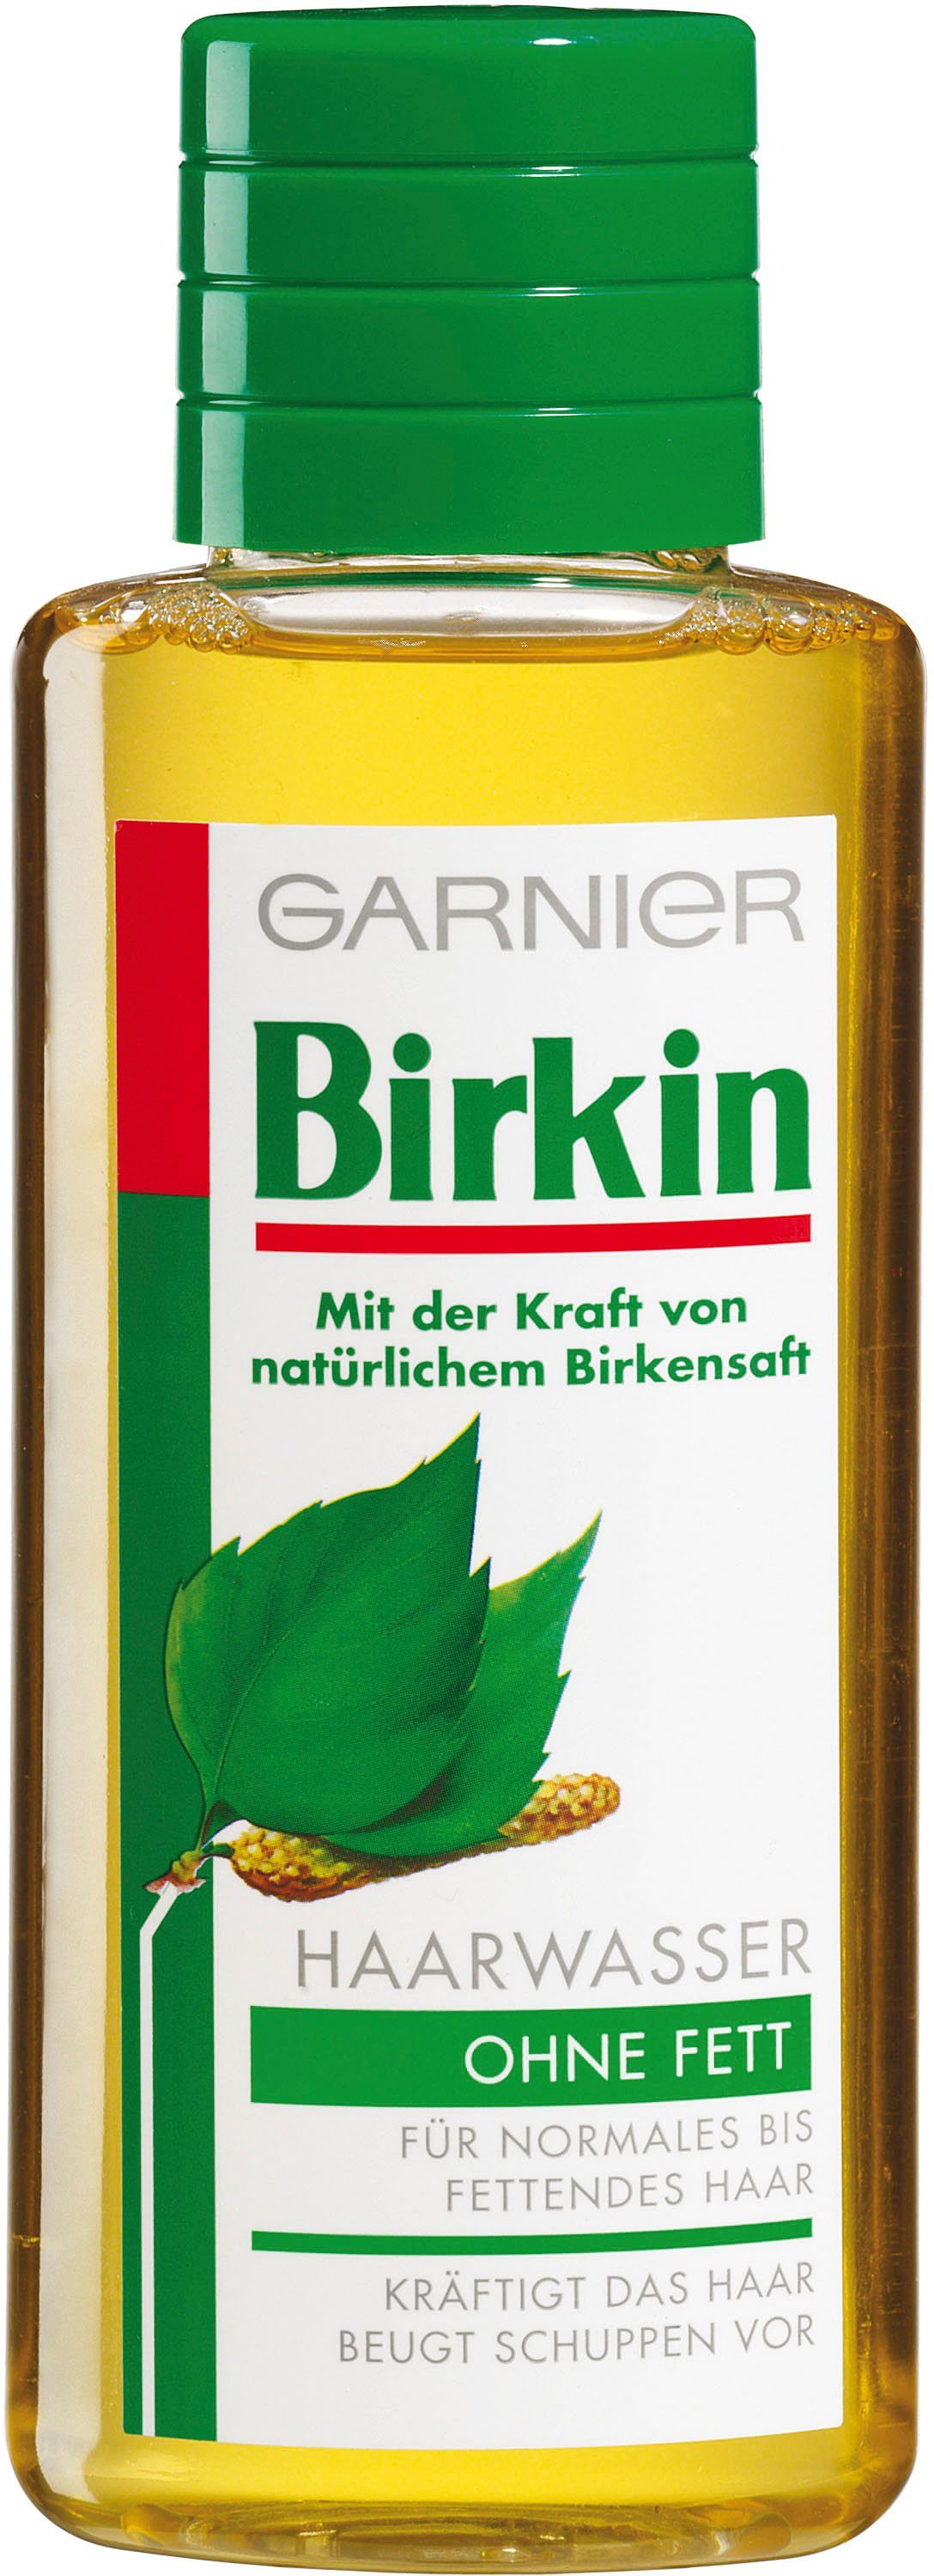 Birkin Haarwasser ohne Fett GARNIER Haarwasser